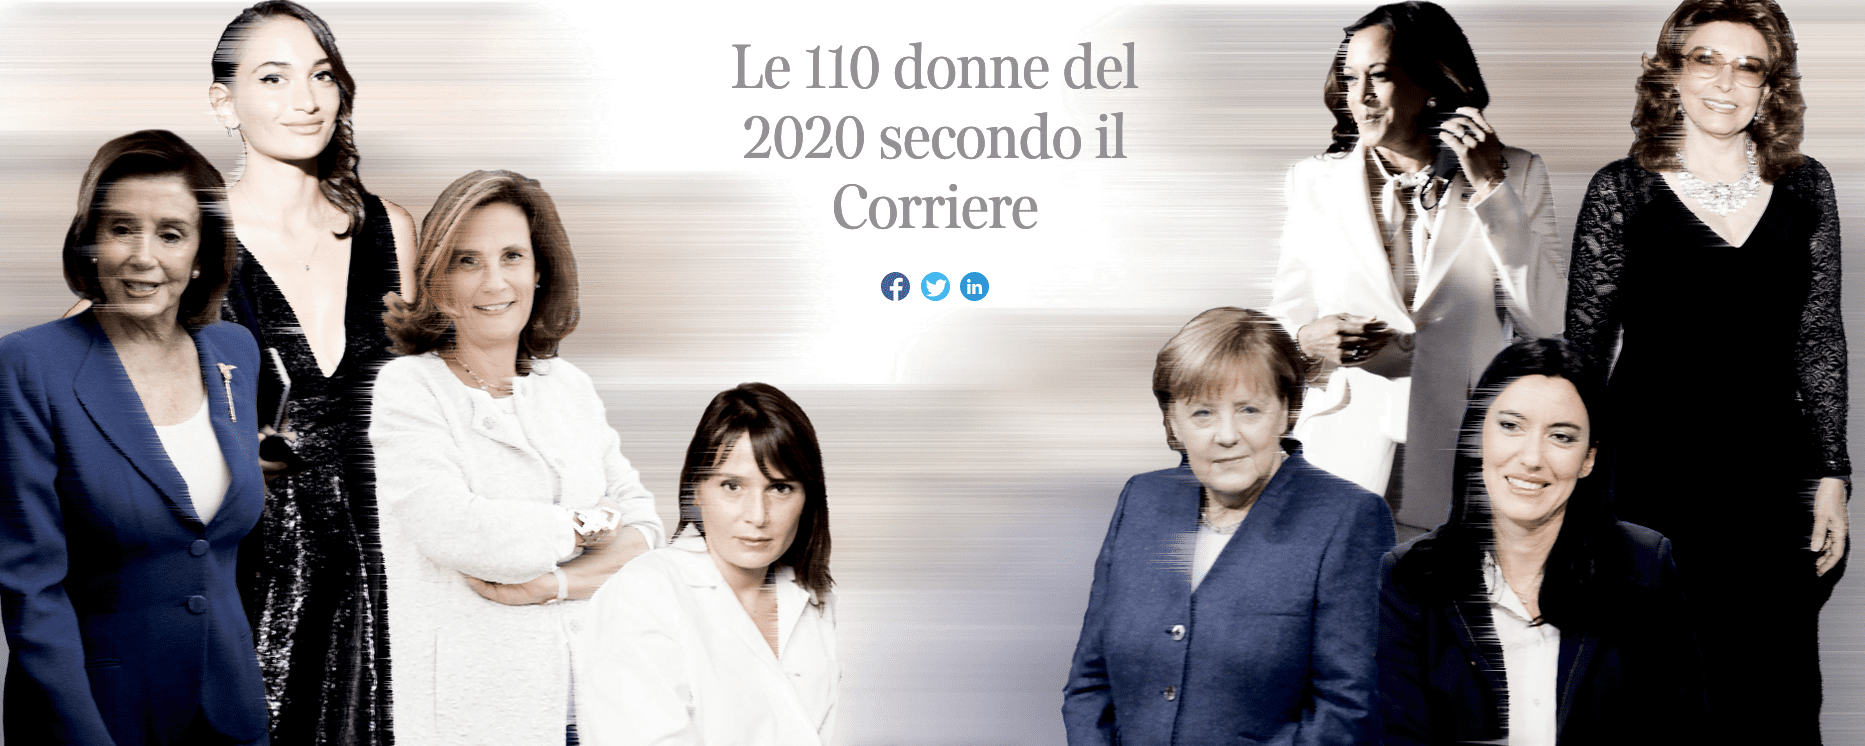 Il Corriere promuove la ministra Azzolina, le da 10